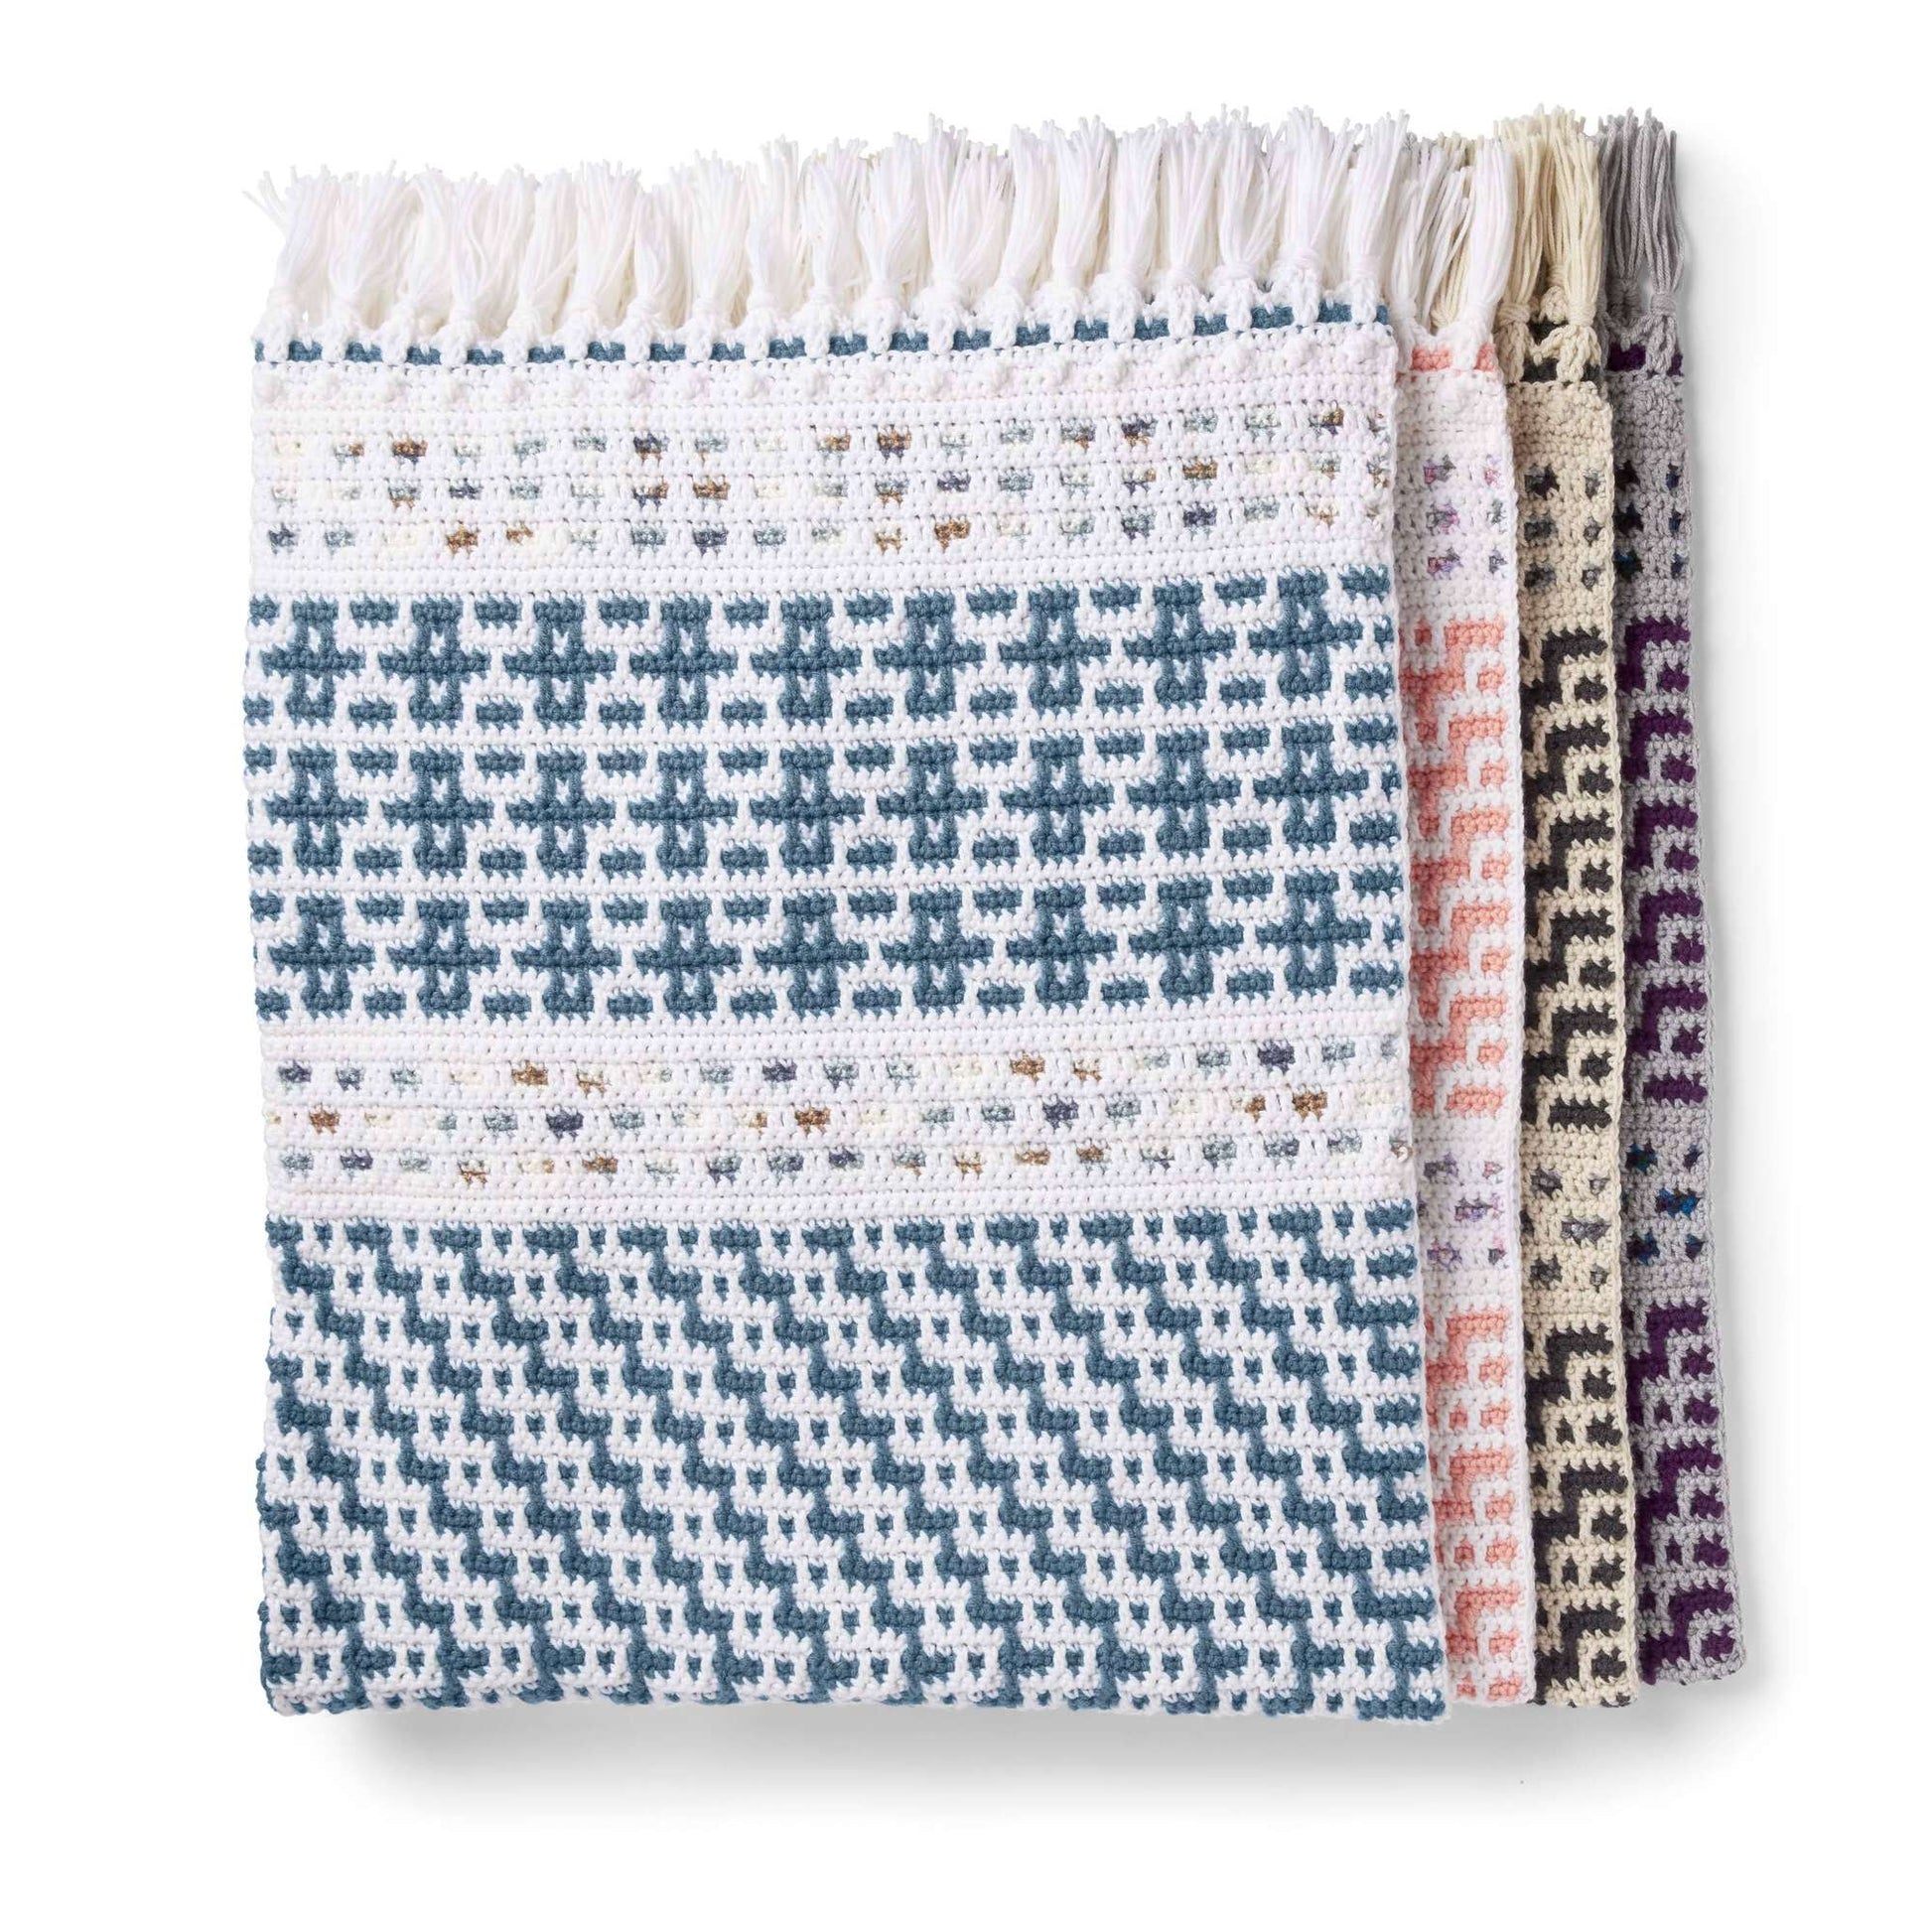 Set of 10 Mosaic Crochet Patterns